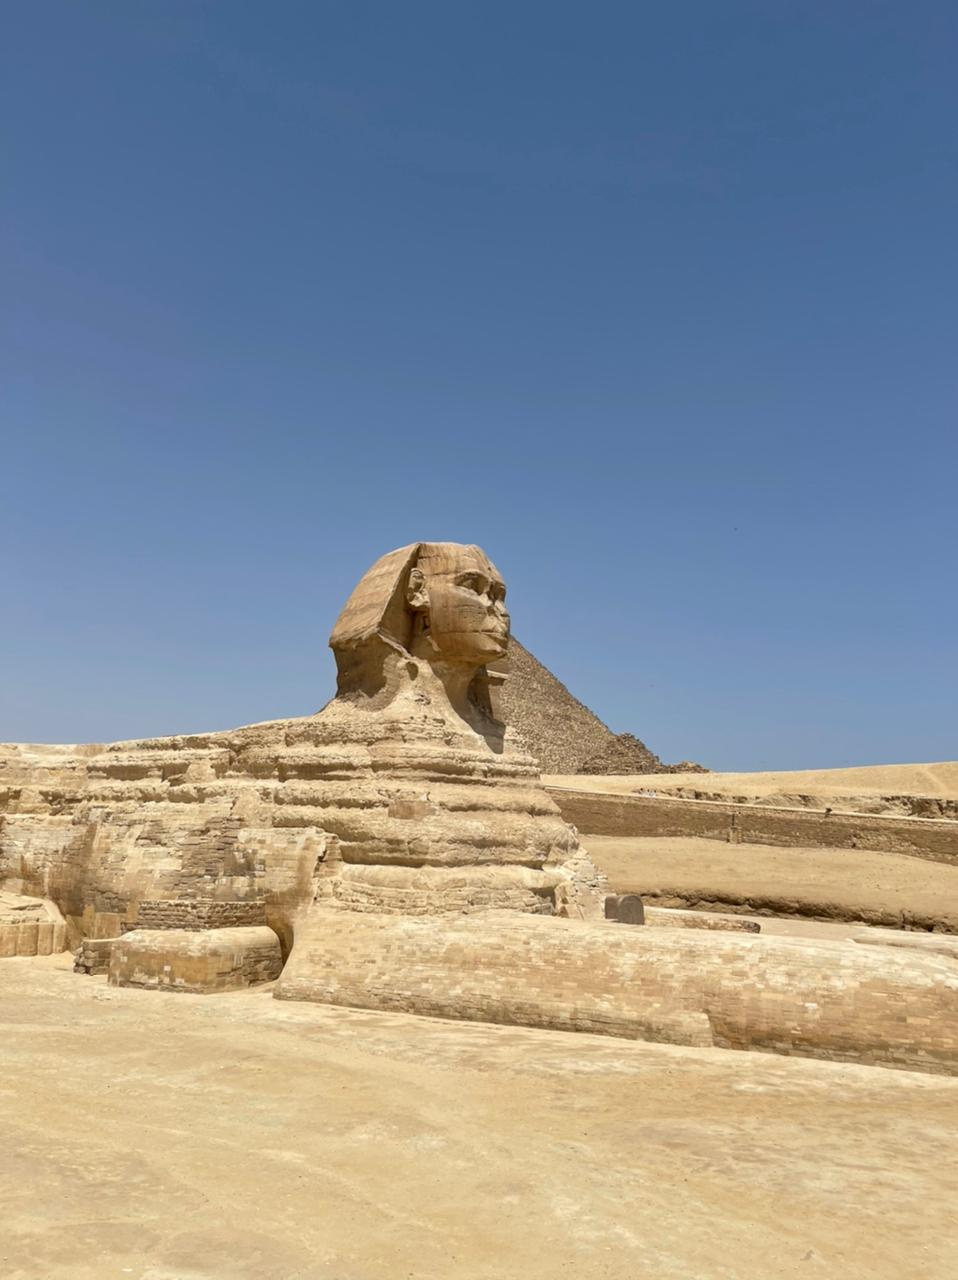 Посмотреть на египетские пирамиды и на Сфинкса — тоже обязательная программа, конечно